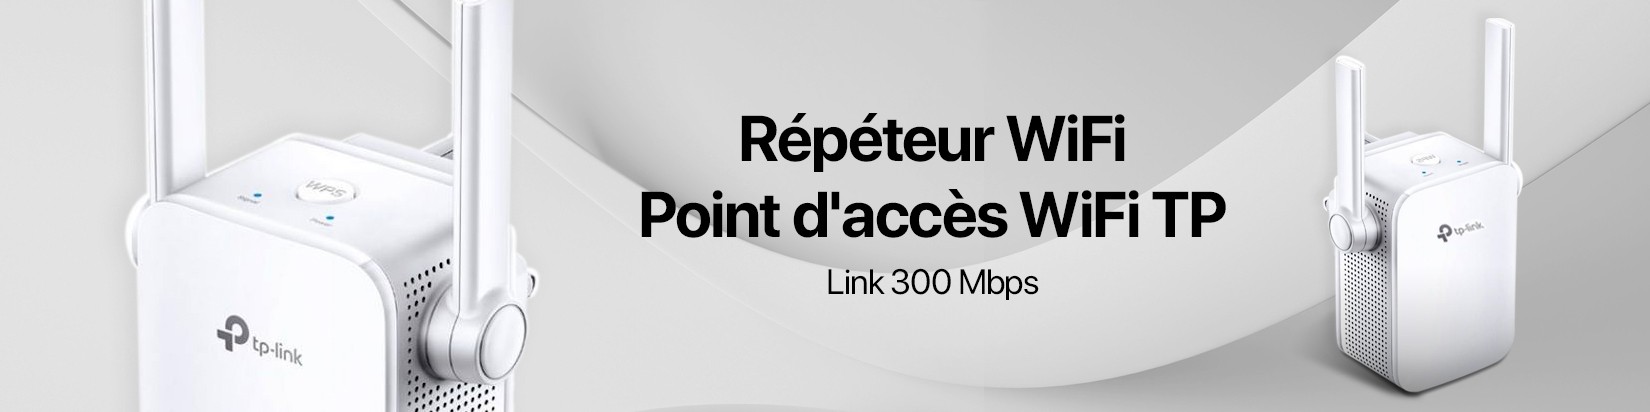 Répéteur WiFi / Point d'accès WiFi TP-Link 300 Mbps